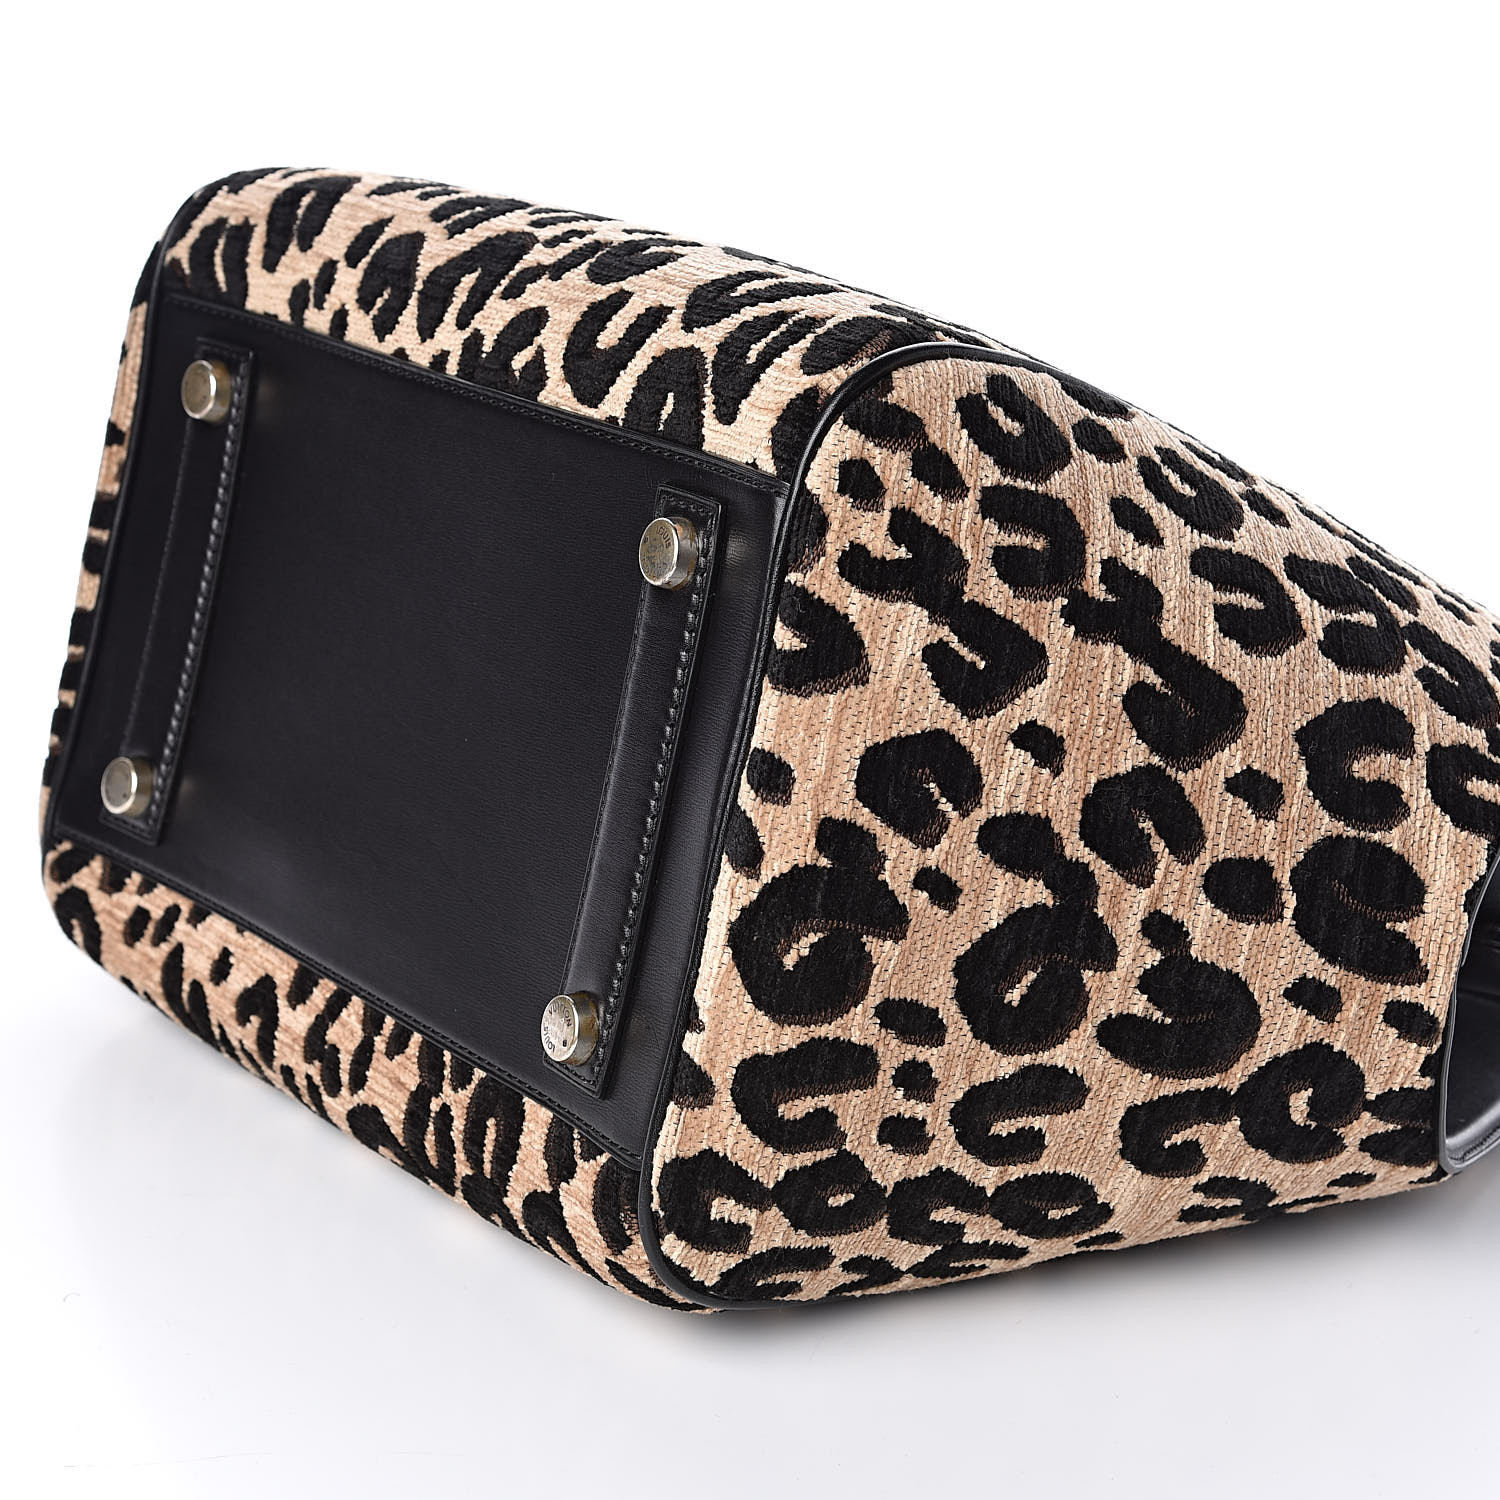 LOUIS VUITTON Jacquard Velvet Leopard Print Stephen Sprouse North South Bag Black 504976